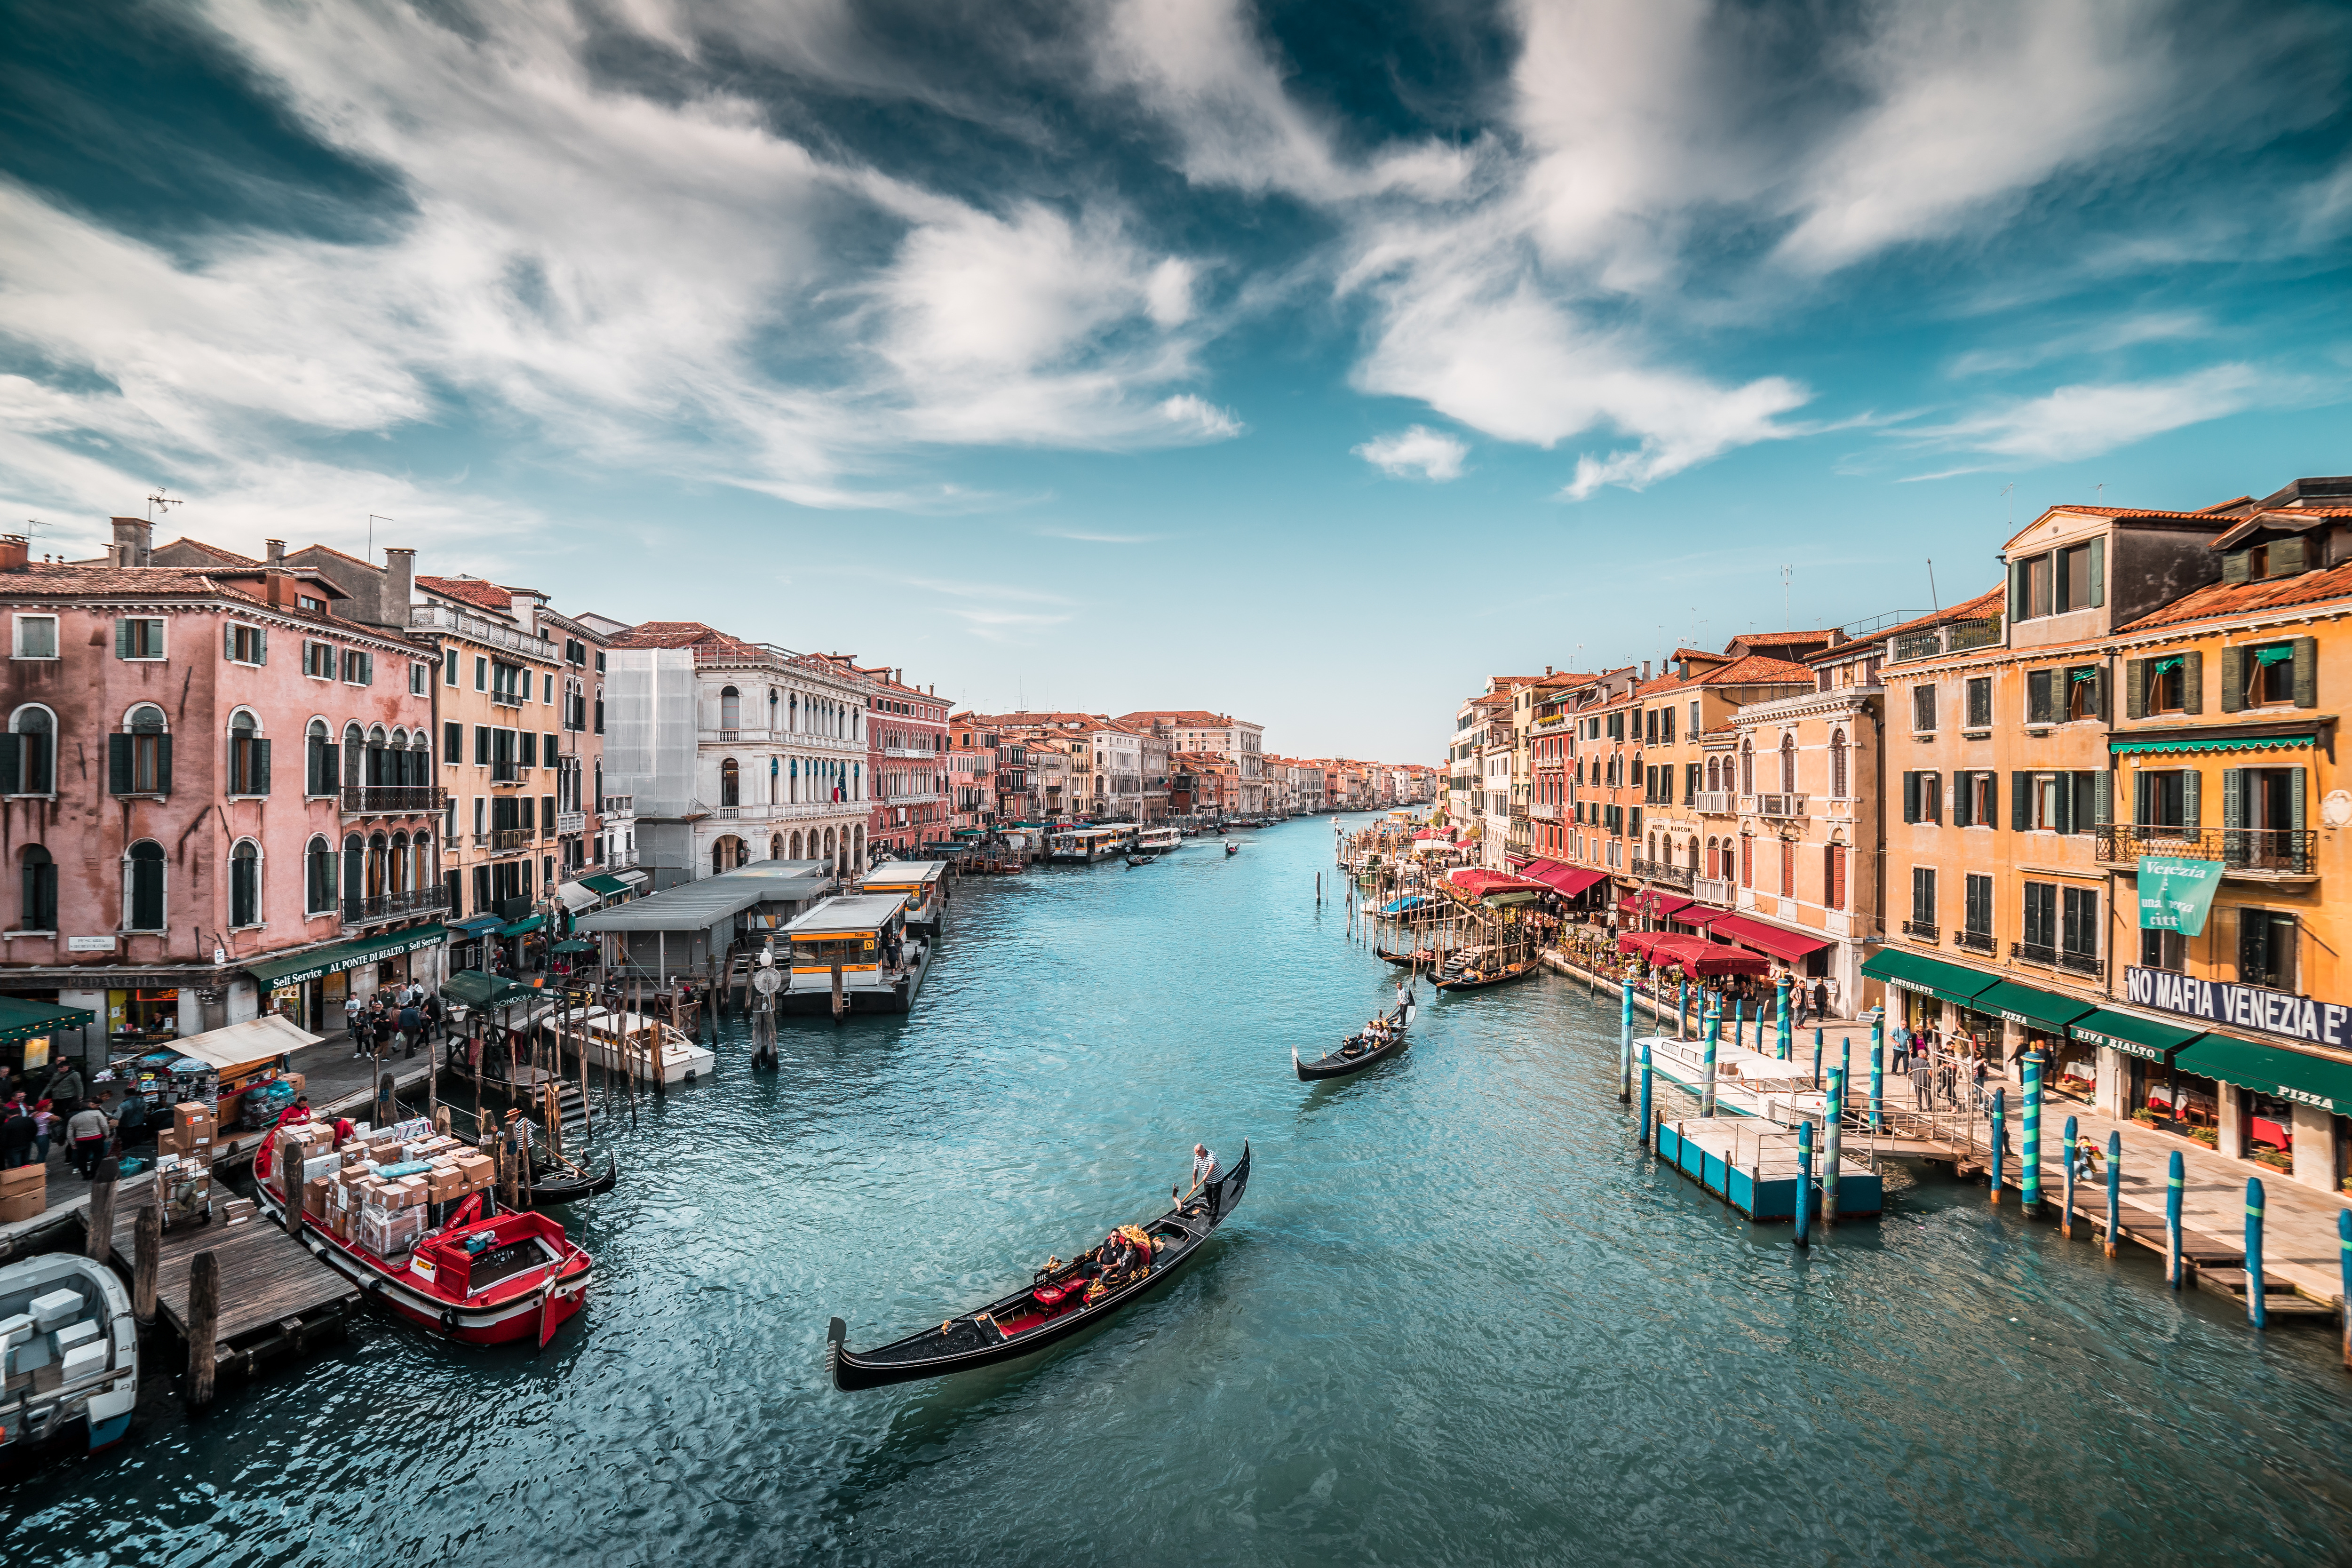 italy boats venice canal 5k 1596916646 - Italy Boats Venice Canal 5k -